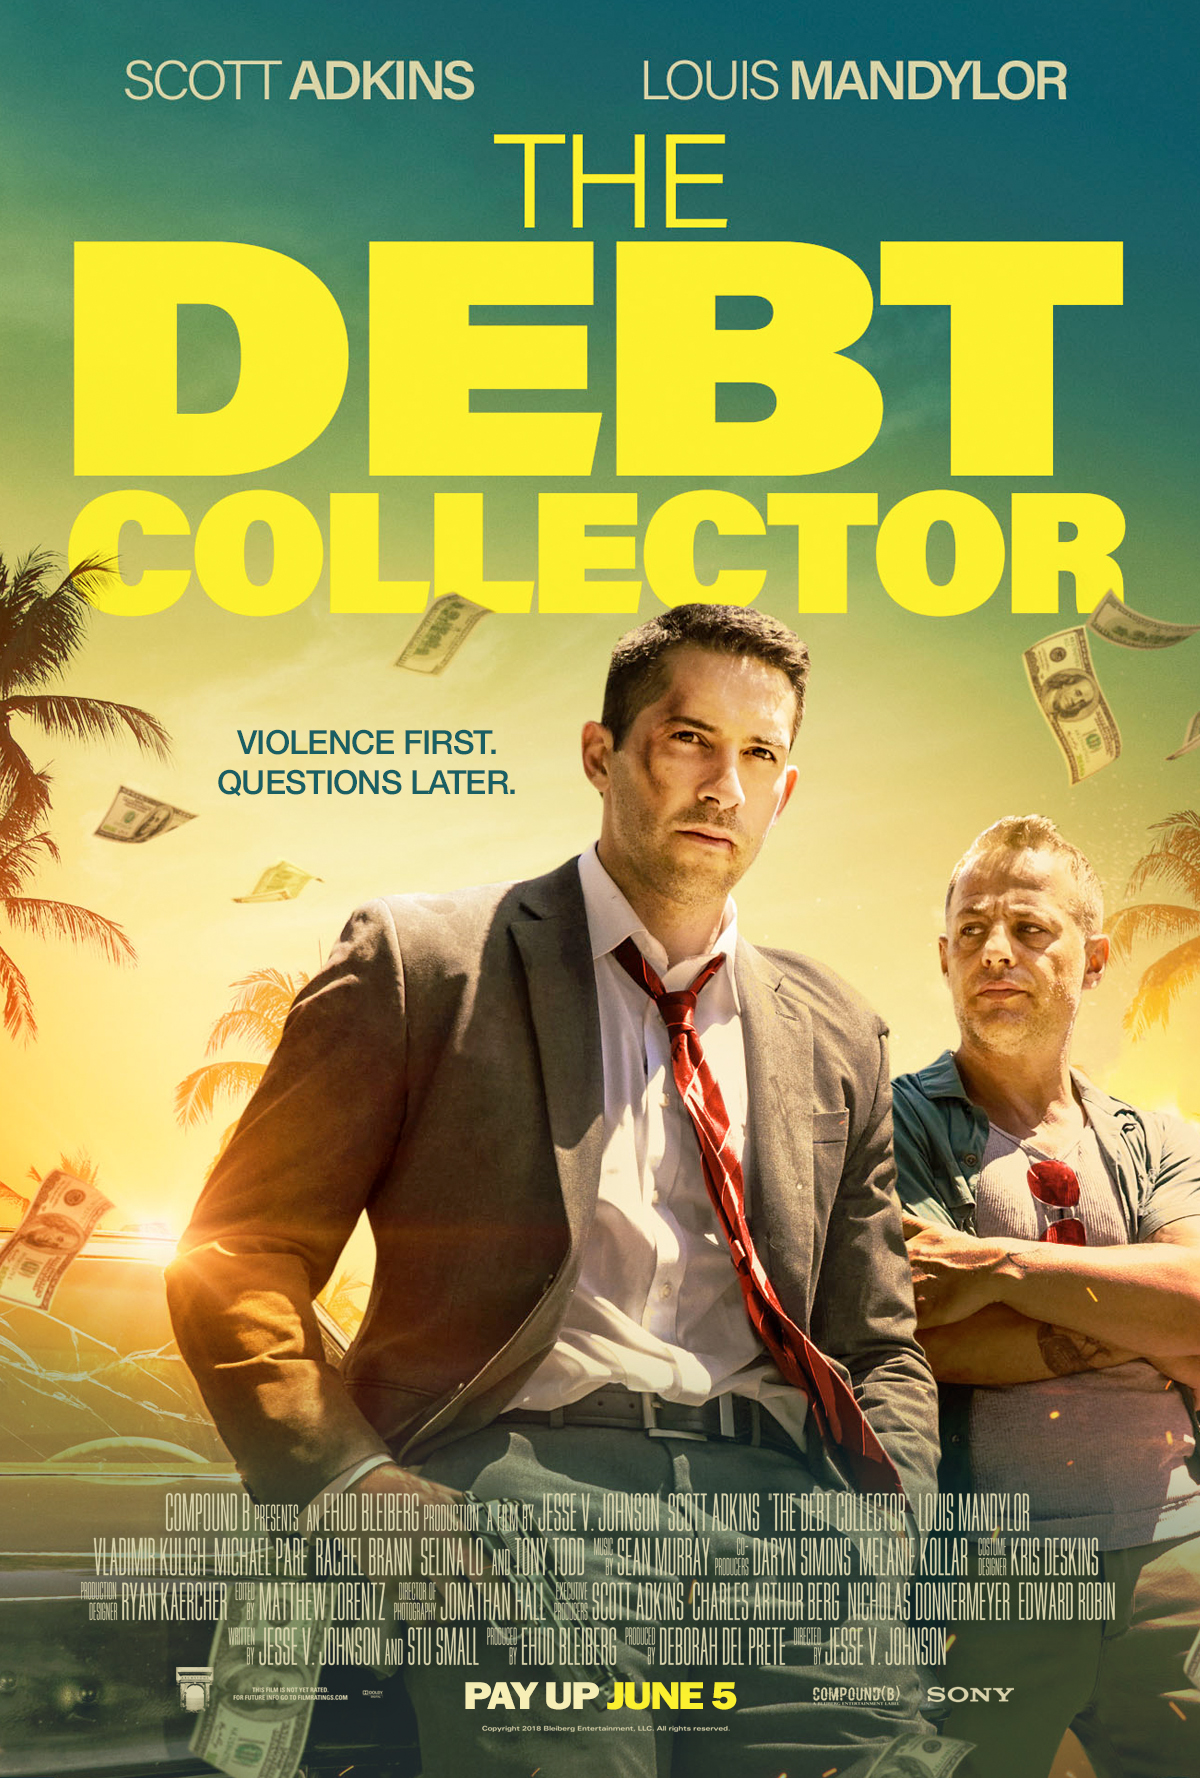 Nonton film The Debt Collector layarkaca21 indoxx1 ganool online streaming terbaru